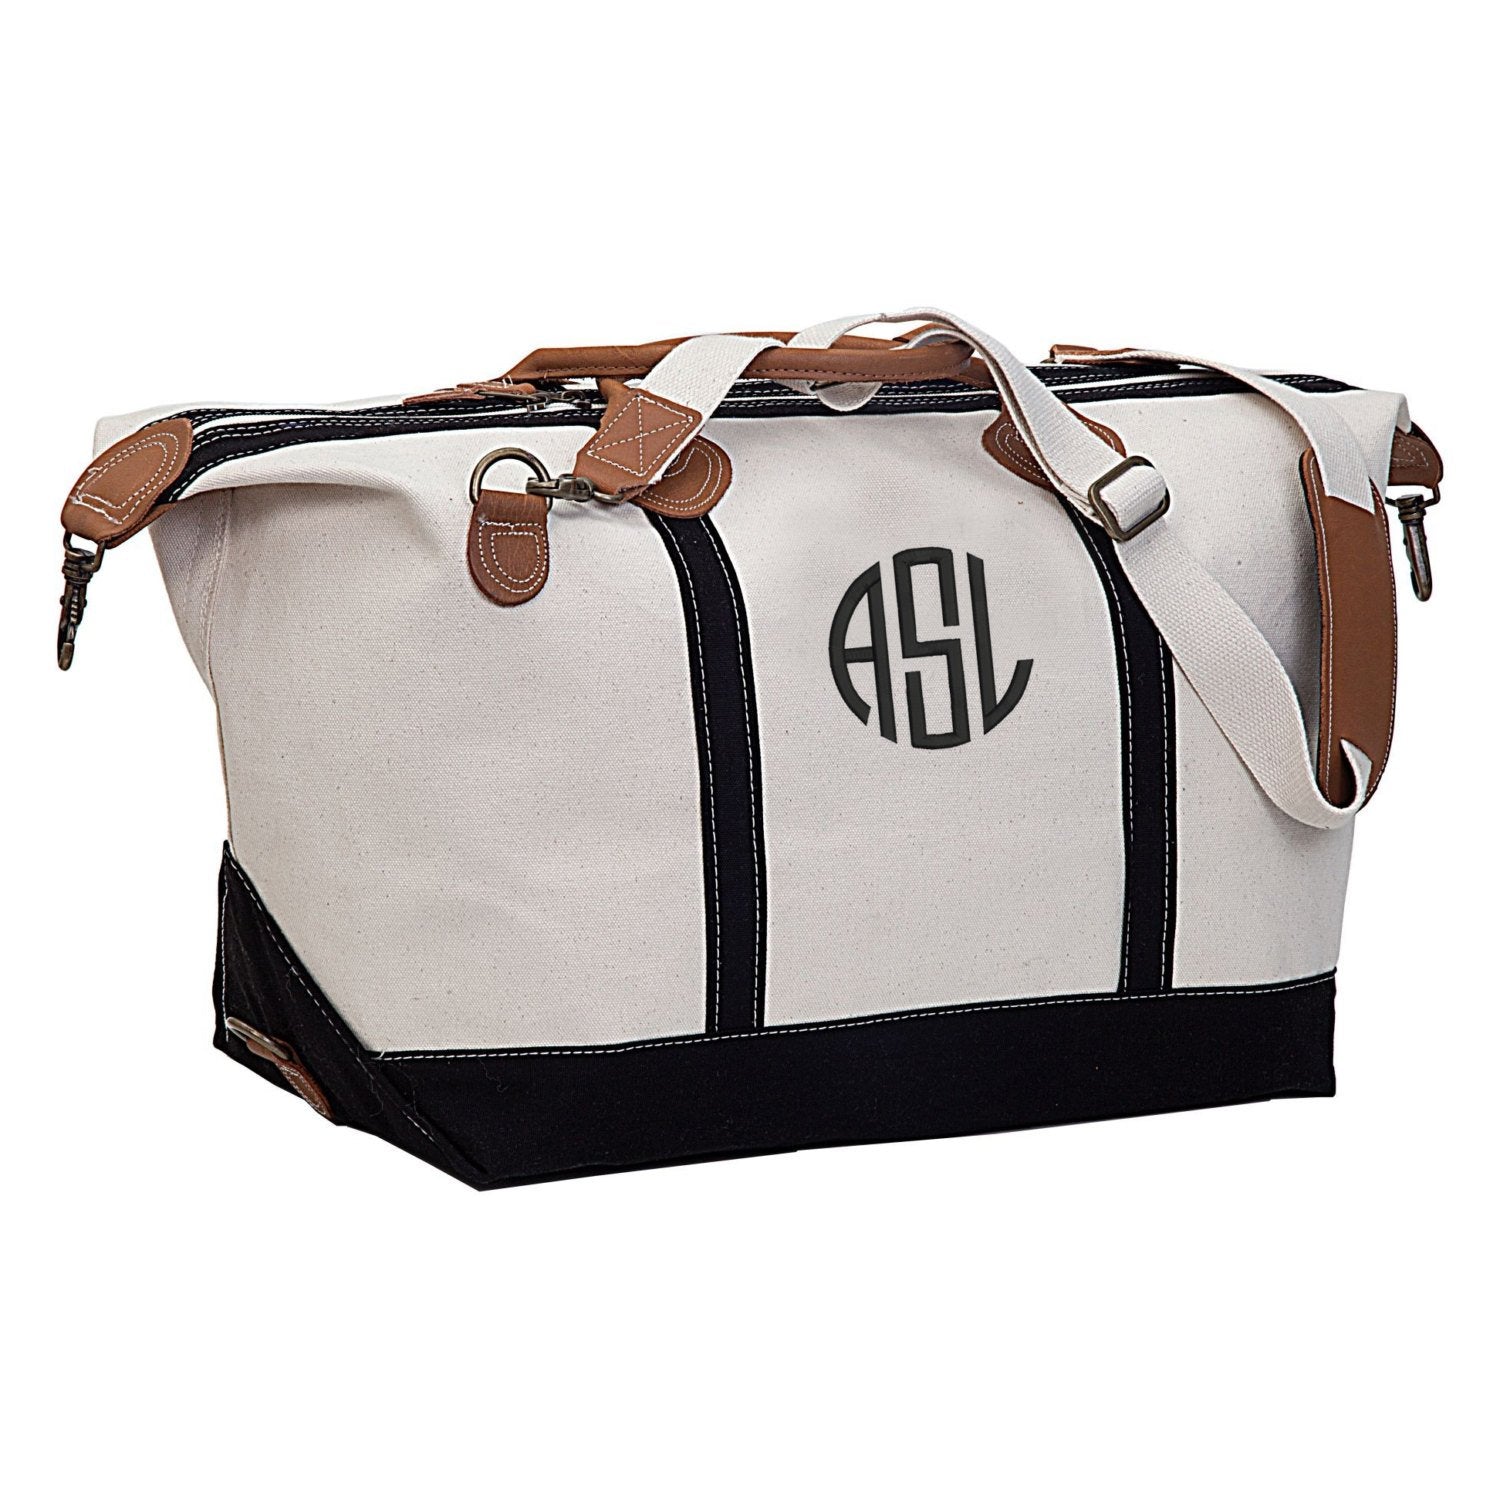 Monogrammed Weekender Travel Bag – Cotton Sisters